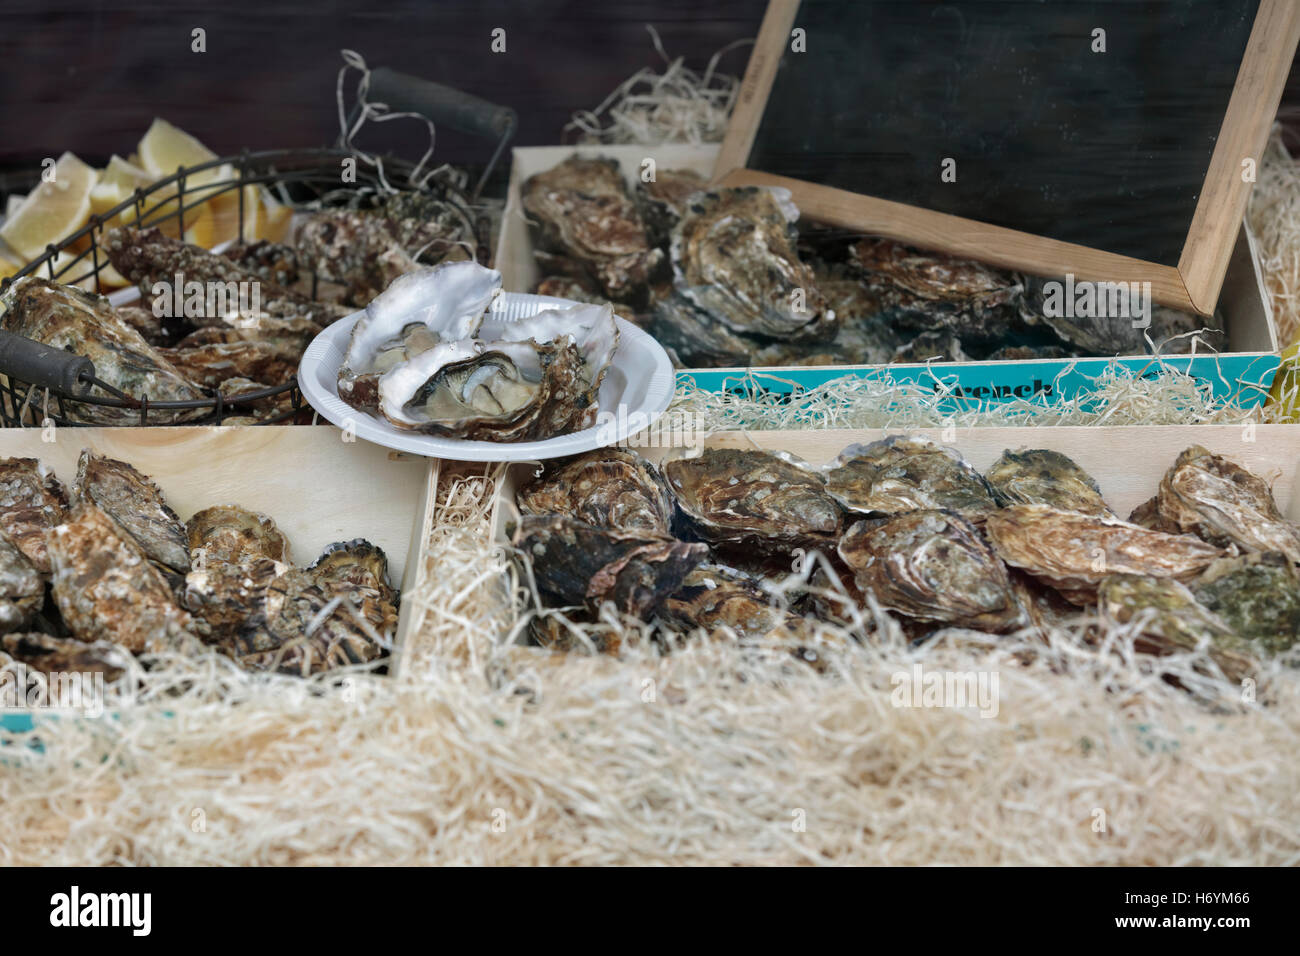 Poisson traditionnel stand plein de coquille fraîche huîtres dans des boîtes Banque D'Images